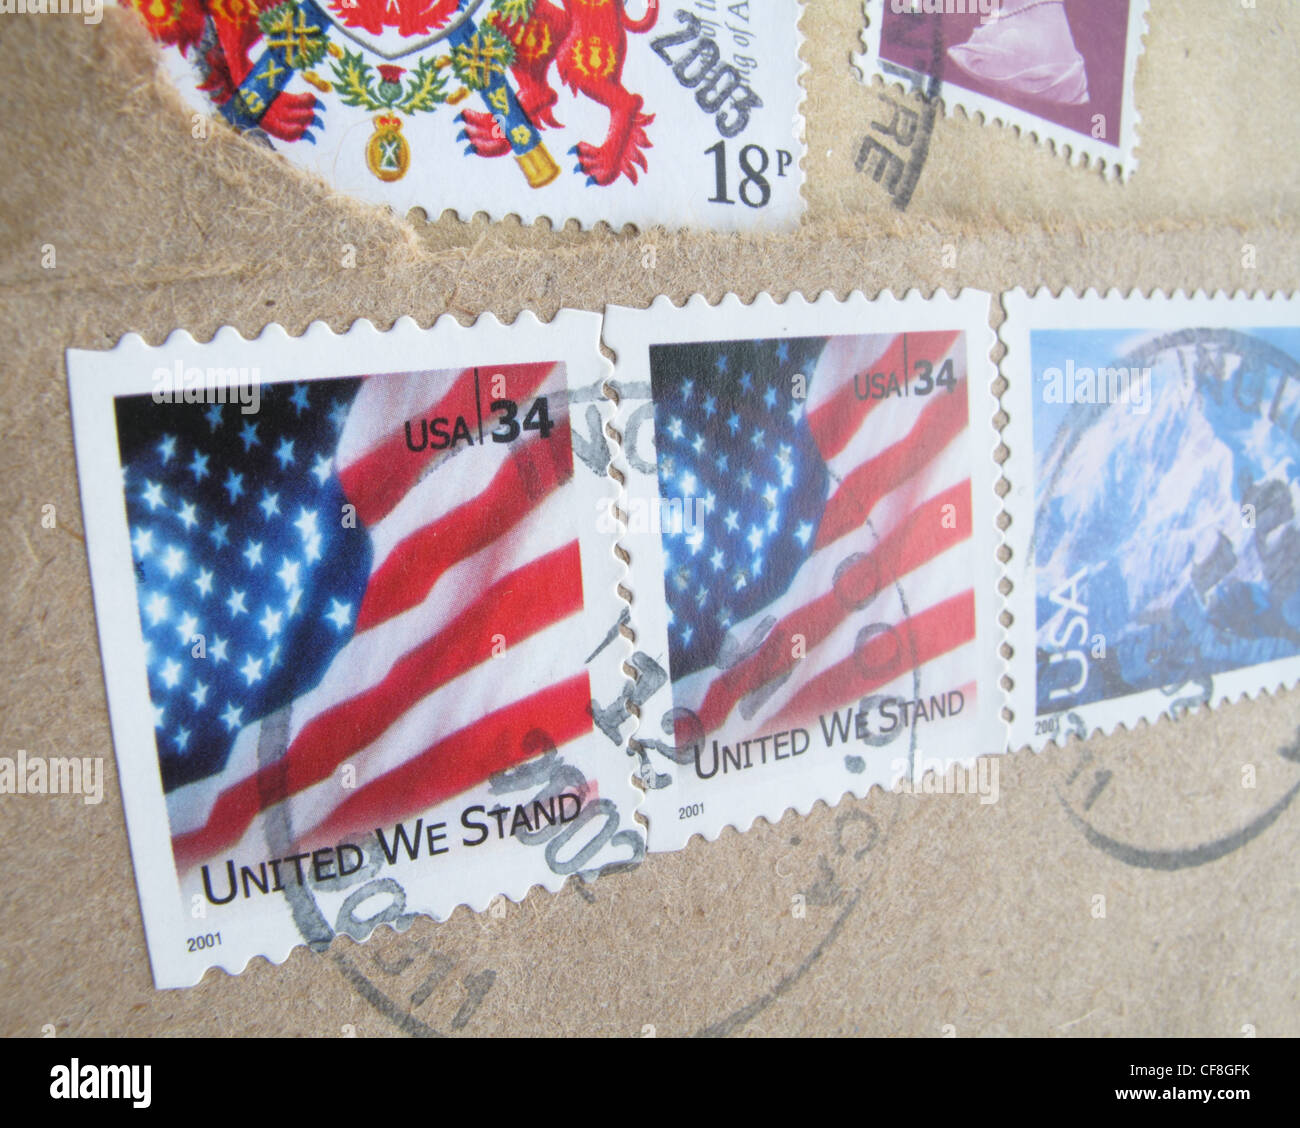 Affrancato francobolli americani che mostra le stelle e strisce di bandiera con il motto - In God We Trust. Foto Stock